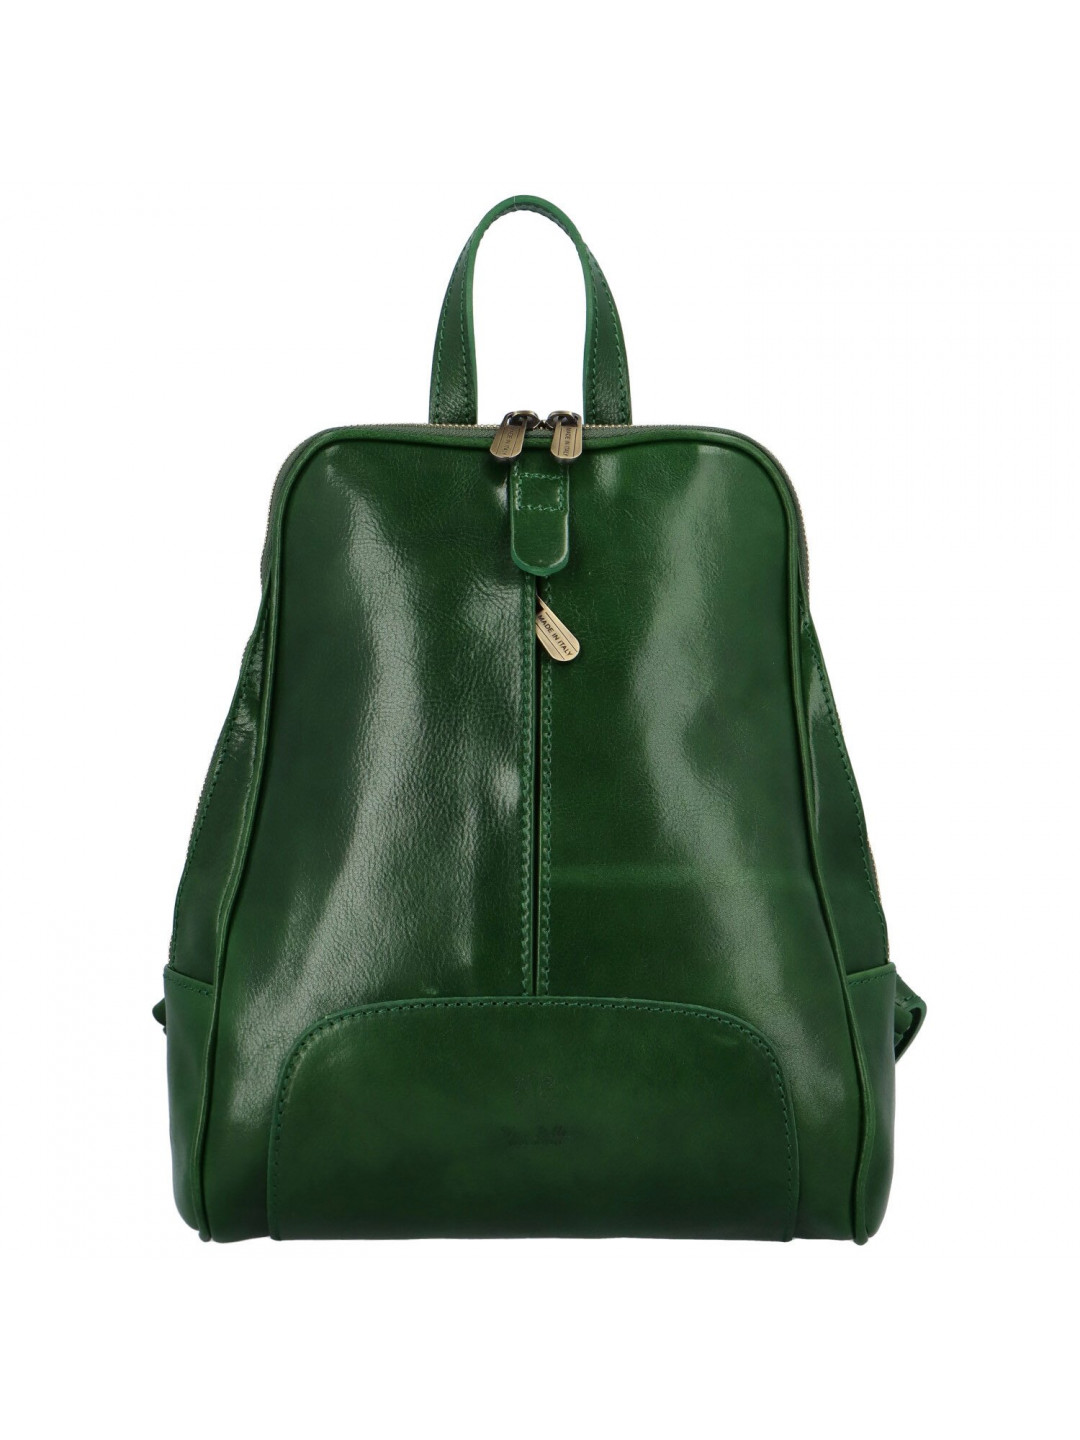 Dámsky kožený batoh zelený – Delami Vera Pelle Liviena